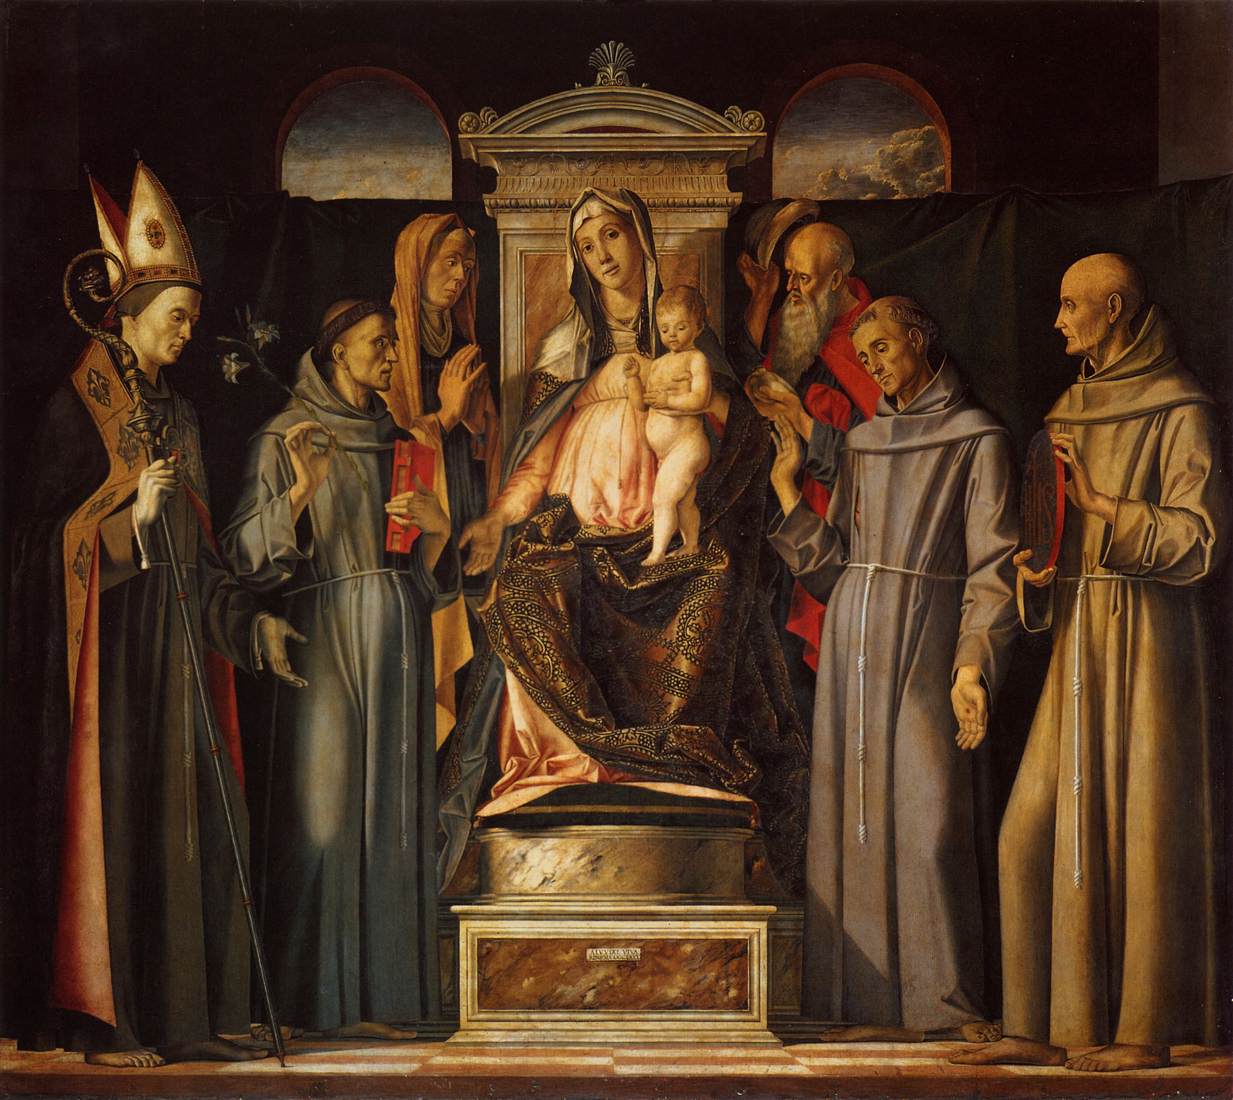 La vierge et l'enfant intronisé avec les saints (Sacra Converszione)